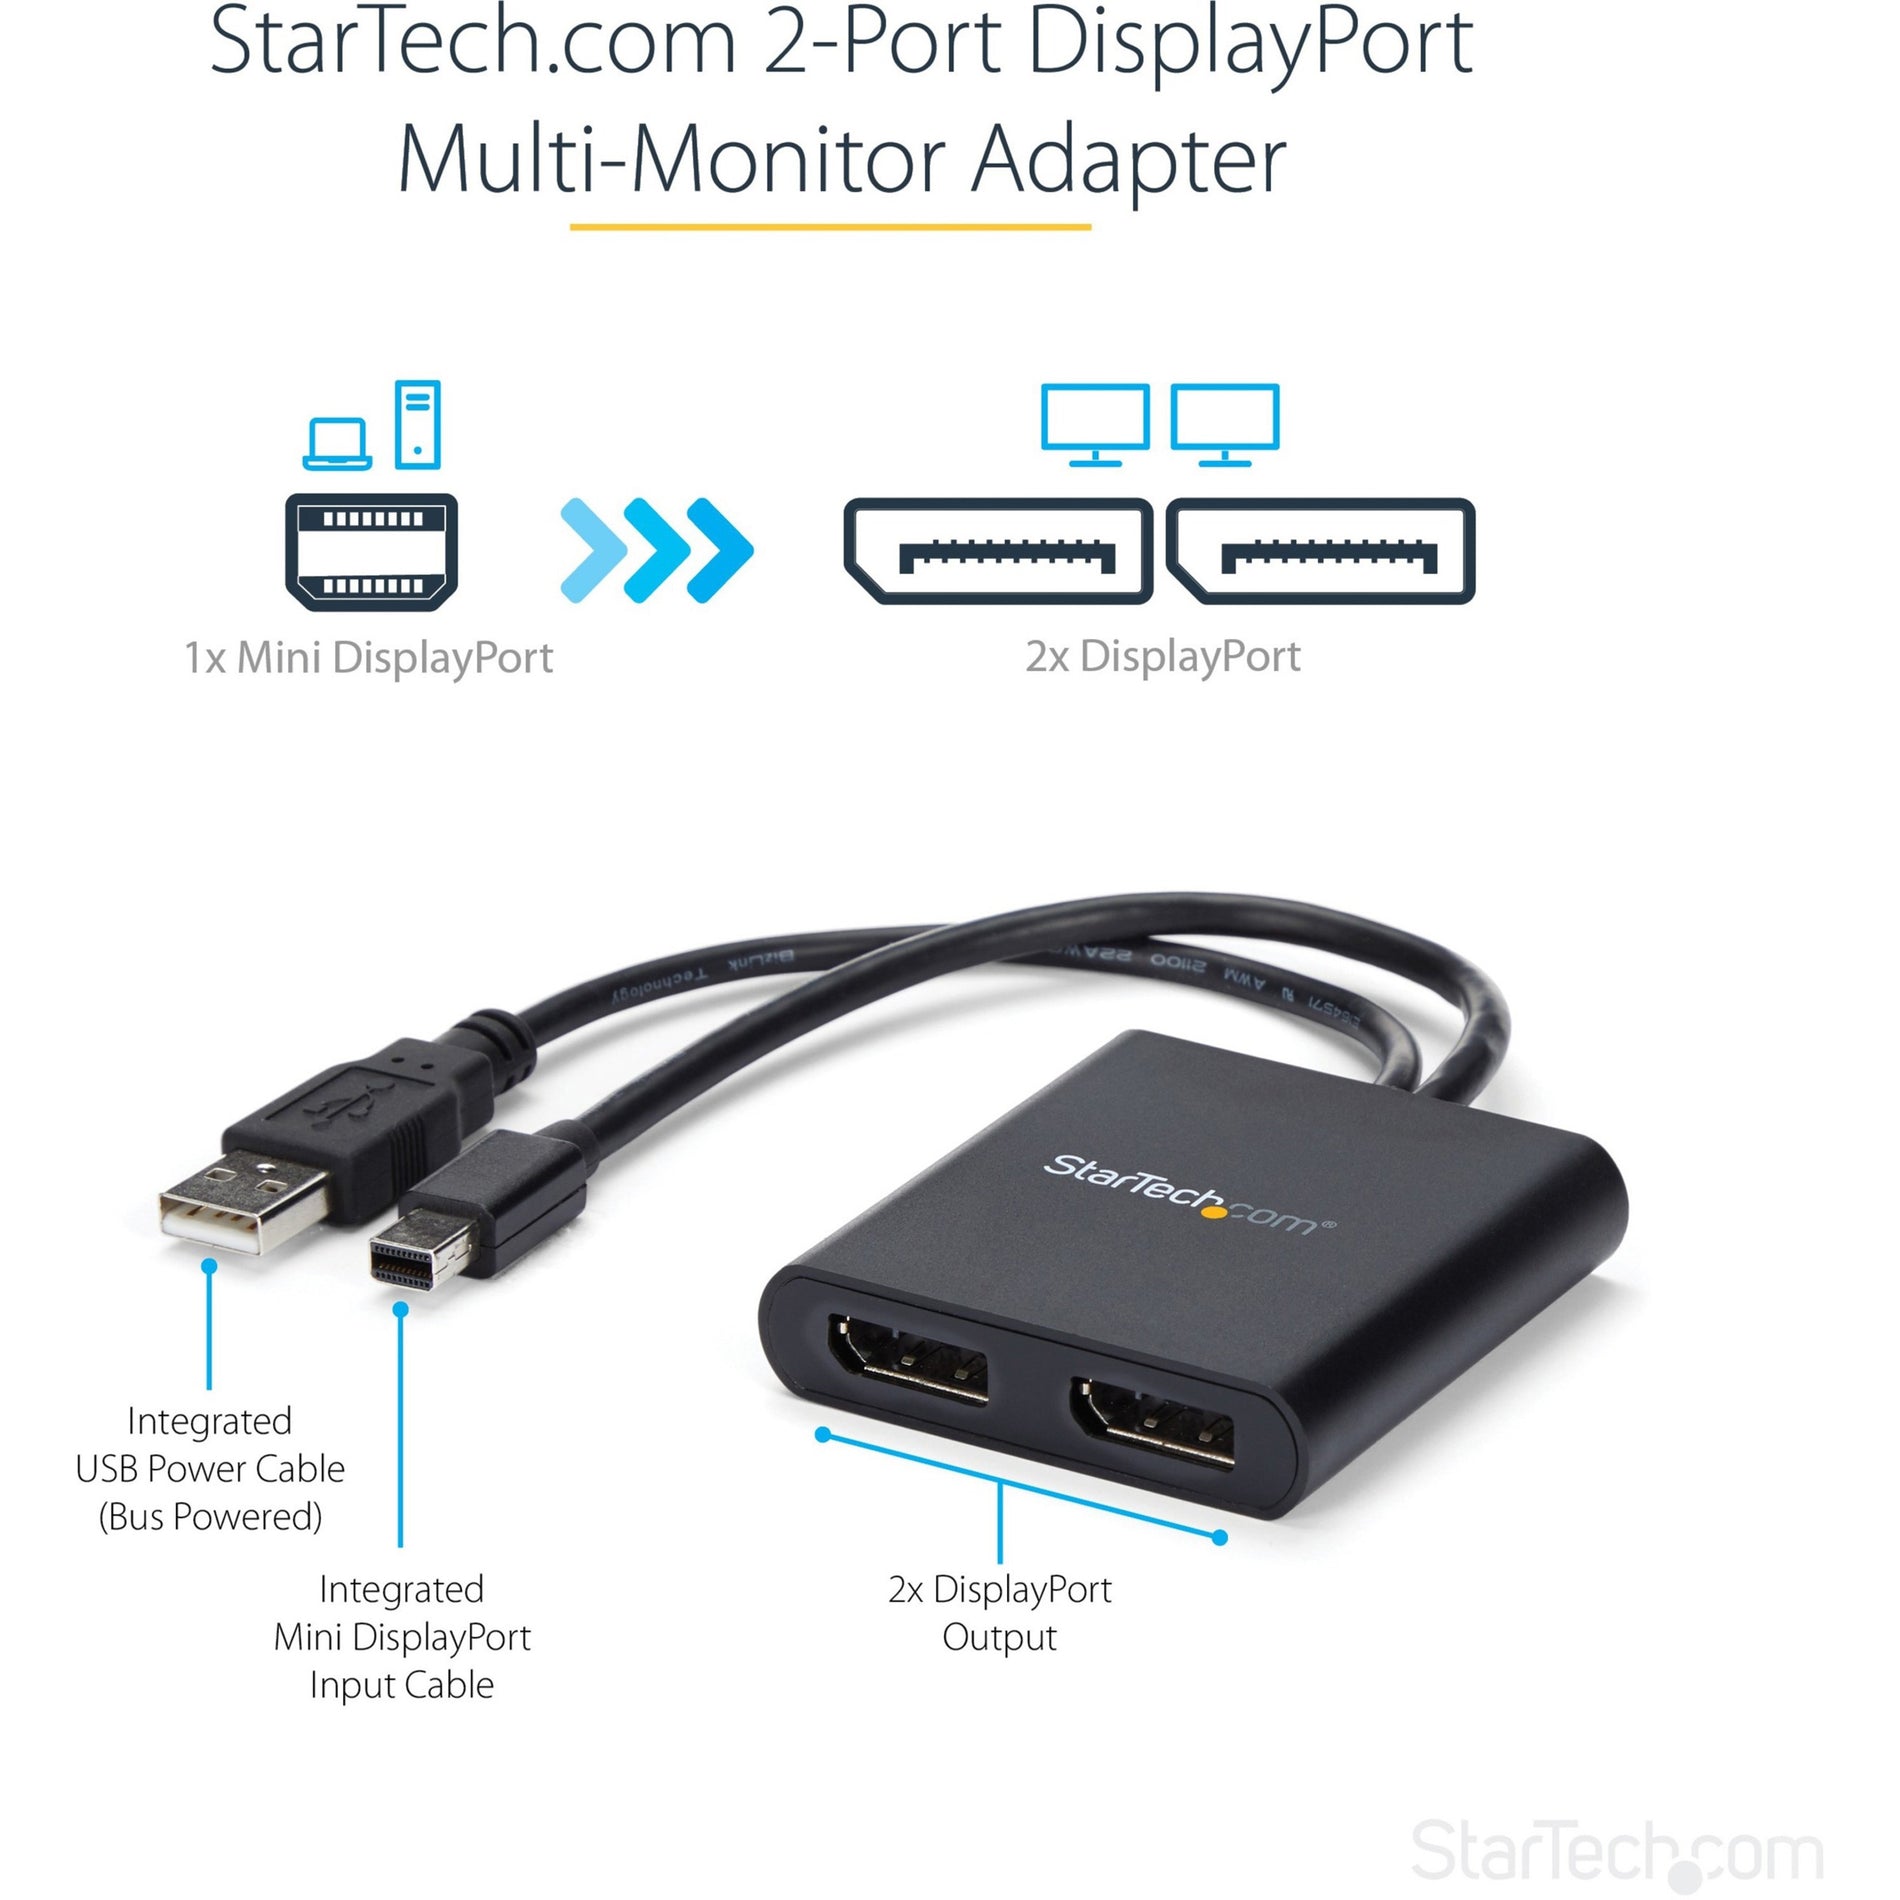 StarTech.com MSTMDP122DP Mini DisplayPort to DisplayPort Multi-Monitor Splitter - 2-Port MST Hub, 4K Video Resolution, USB, RoHS, WEEE, REACH